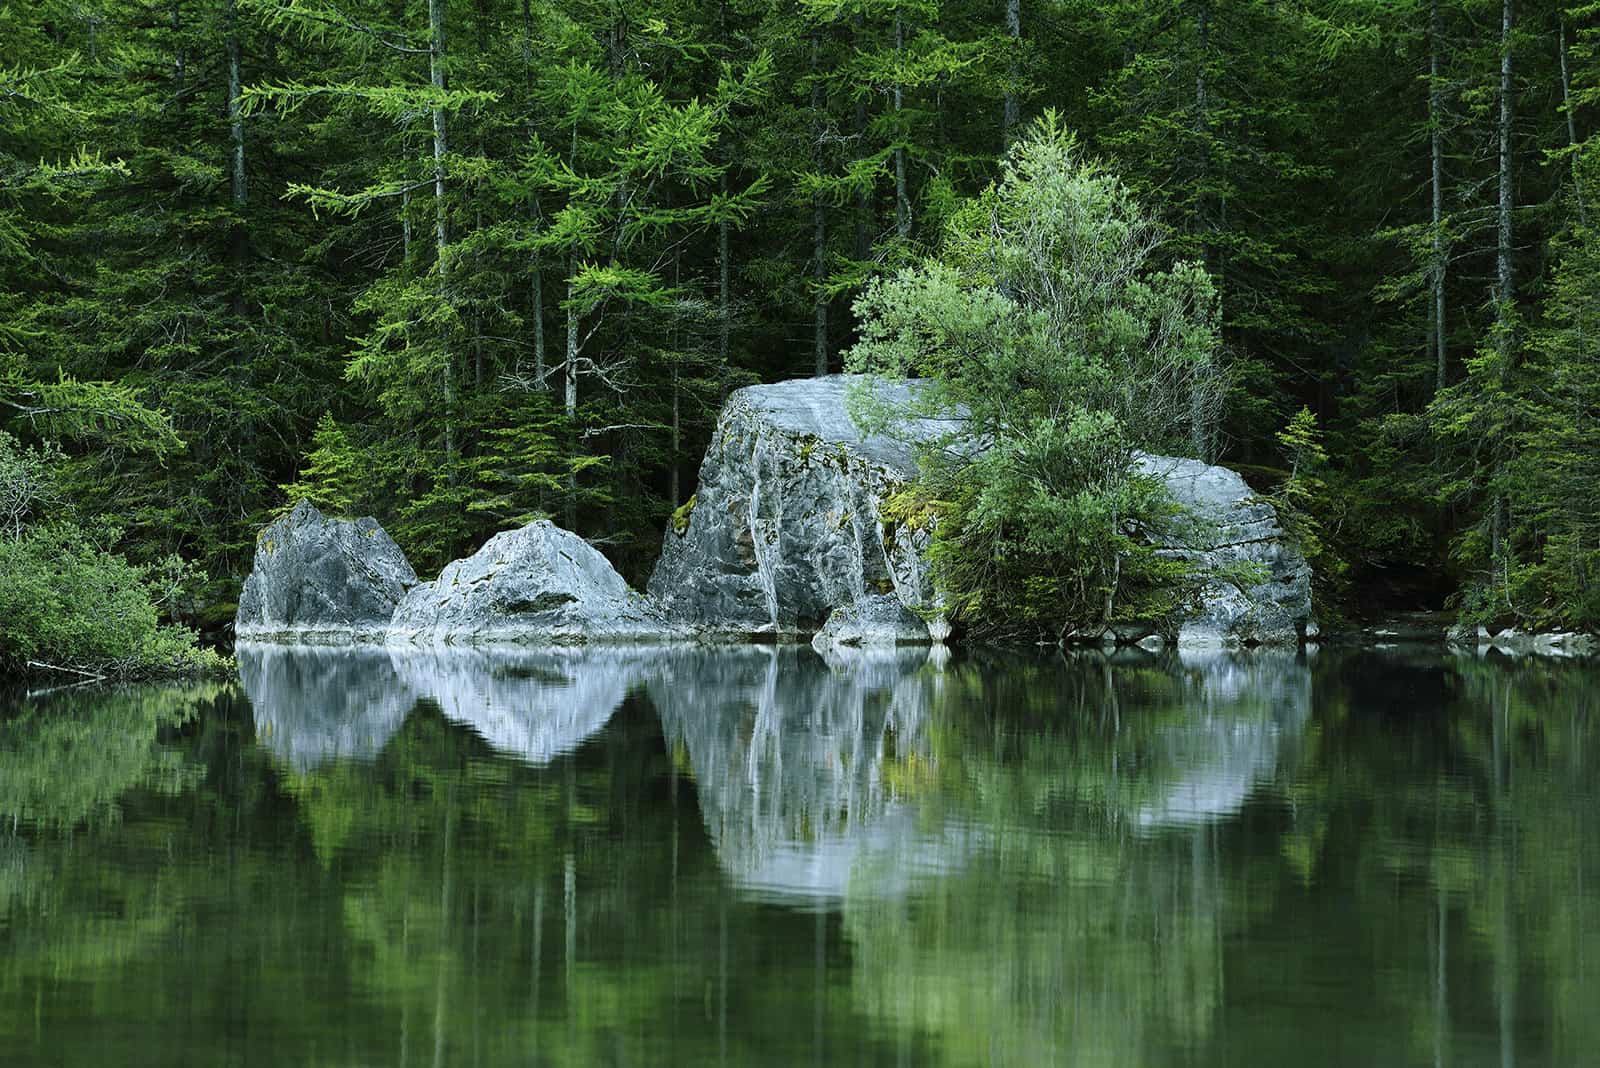 Rochers gris se reflétant dans l'eau d'un lac avec une forêt verte